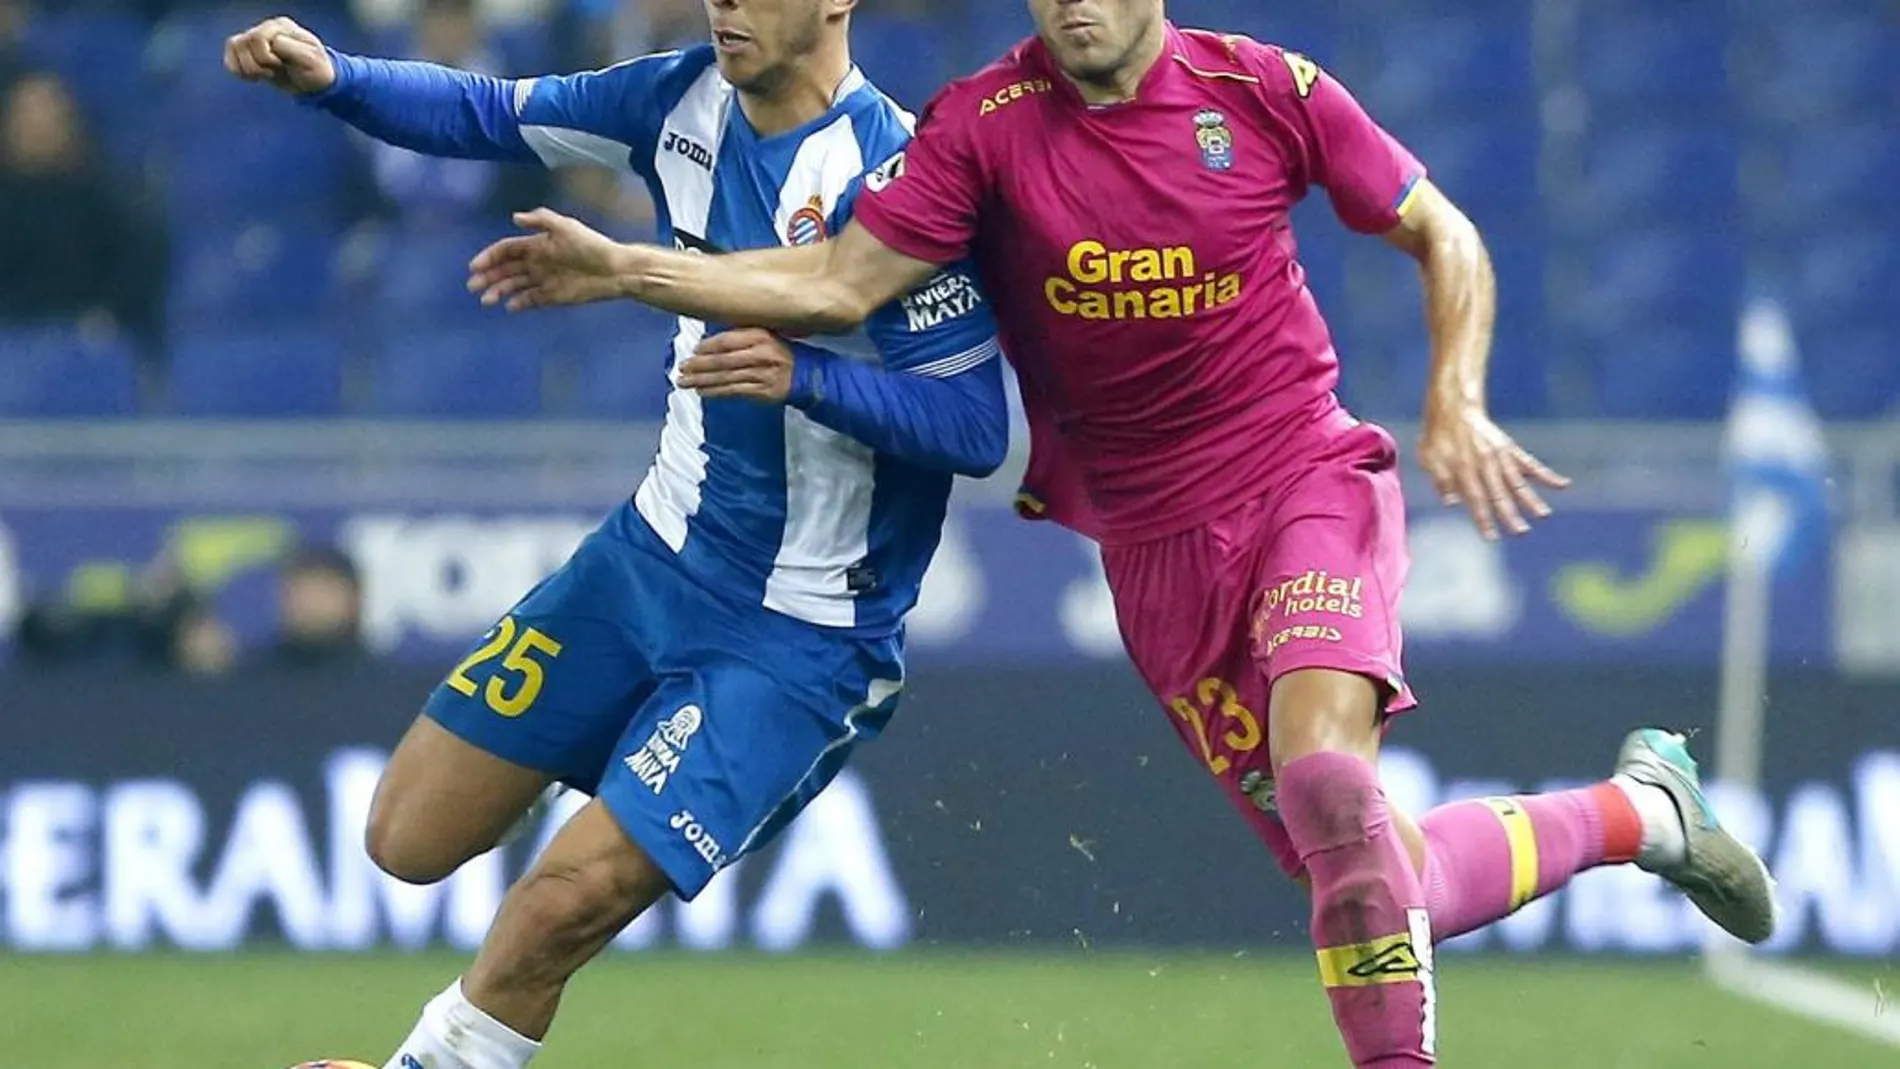 El centrocampista del Espanyol Marcos Asensio, pelea un balón con el centrocampista de la UD Las Palmas Javi Castellano